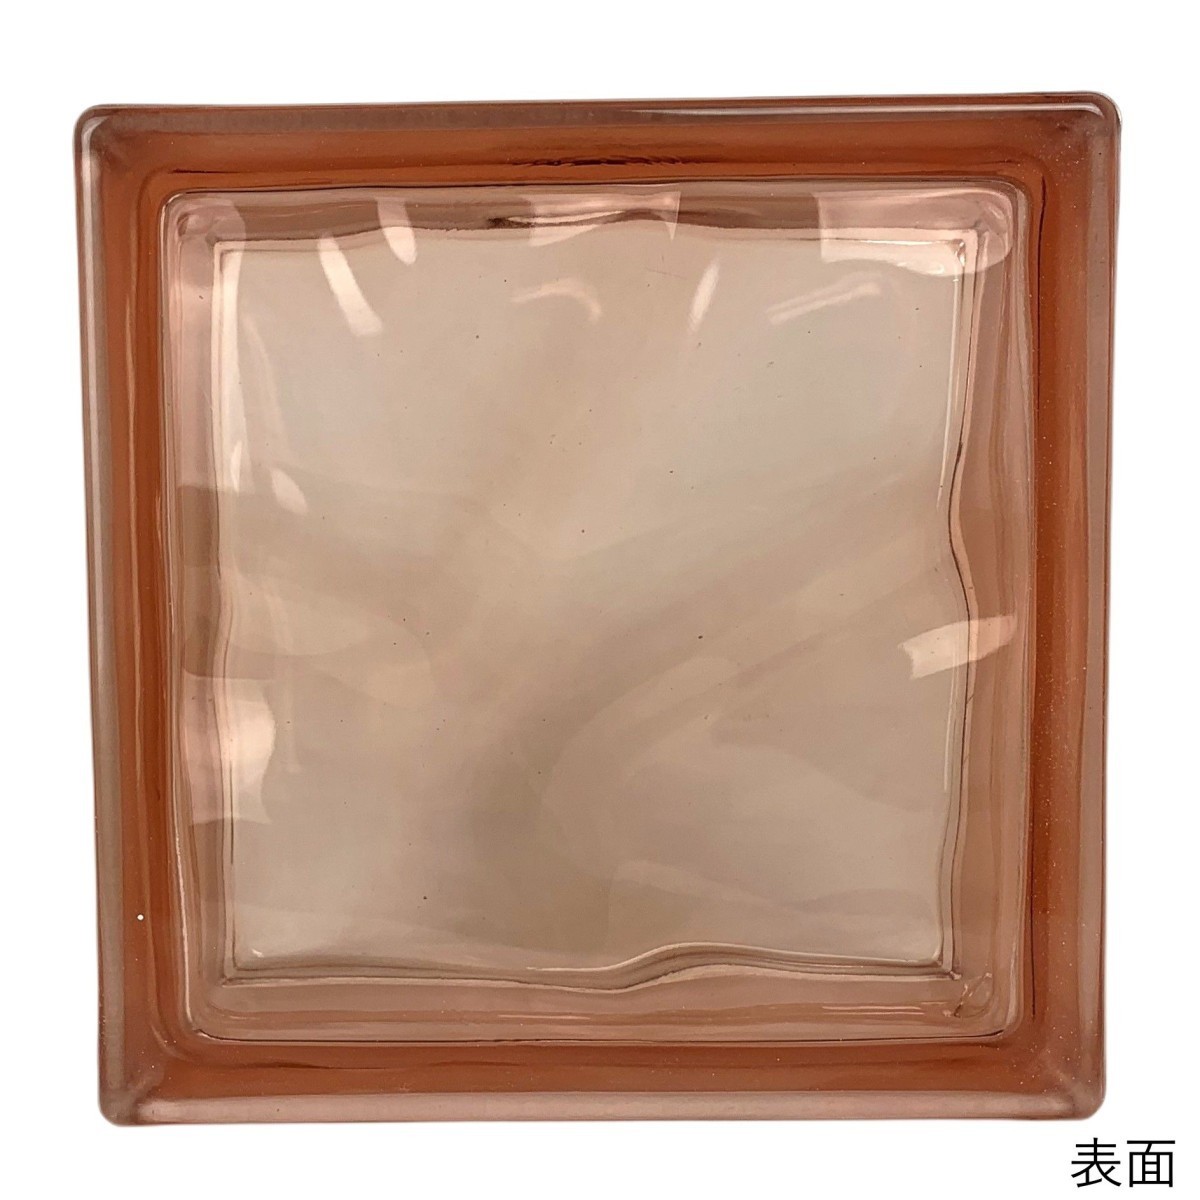 6個セット 送料無料 ガラスブロック 世界で有名なブランド品 厚み80mmピンク色雲 gb4180-6p_画像3